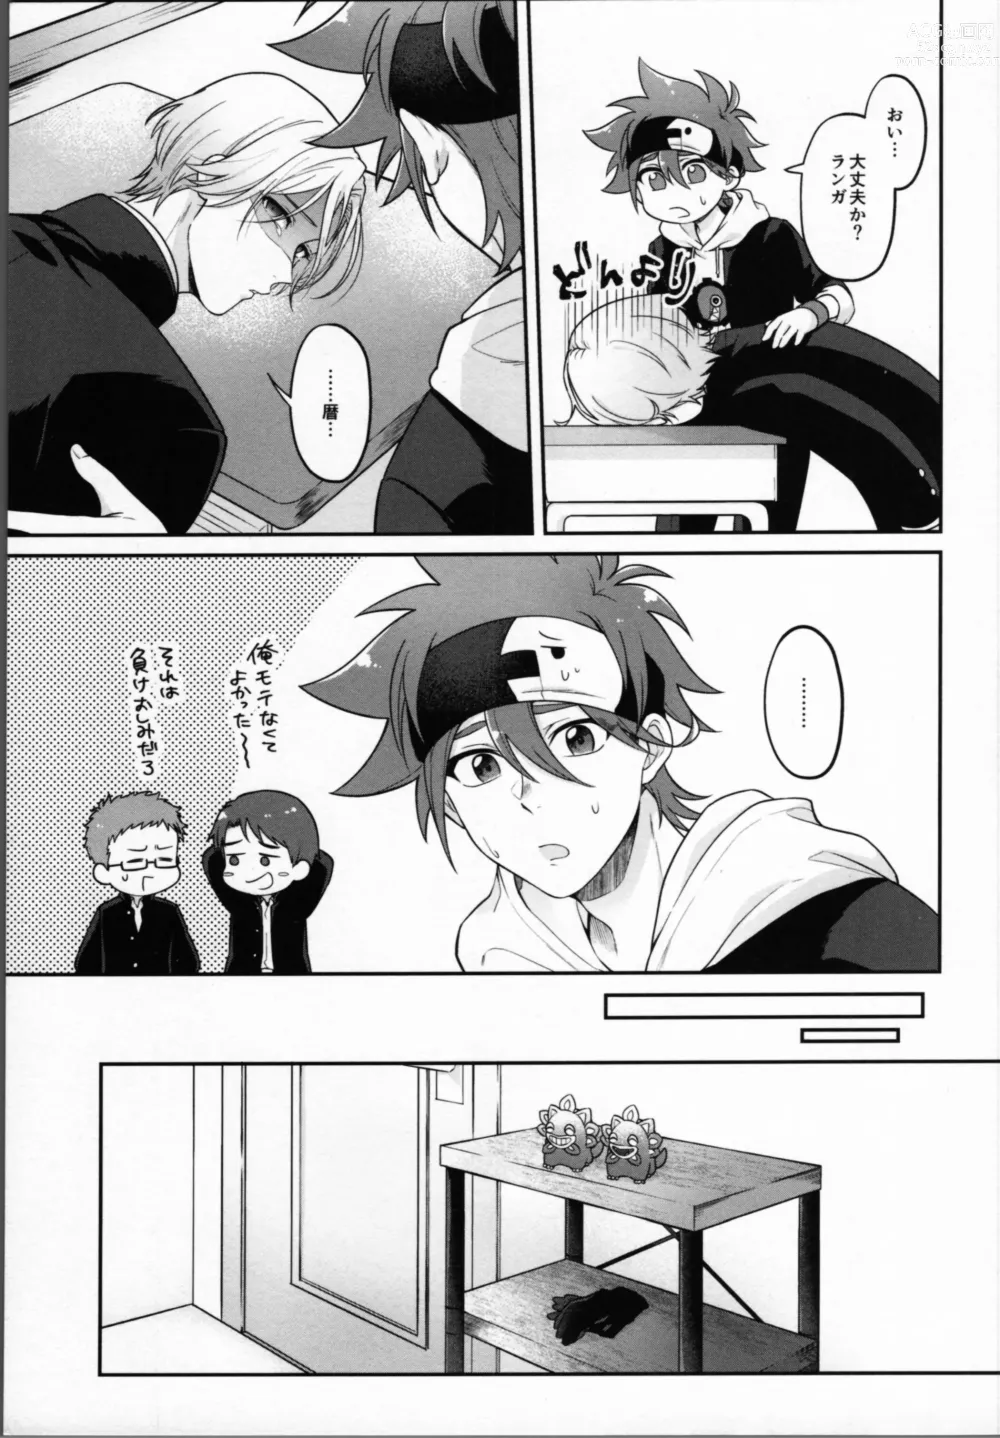 Page 6 of doujinshi 2 Tsuki ga kirai to iukeredo